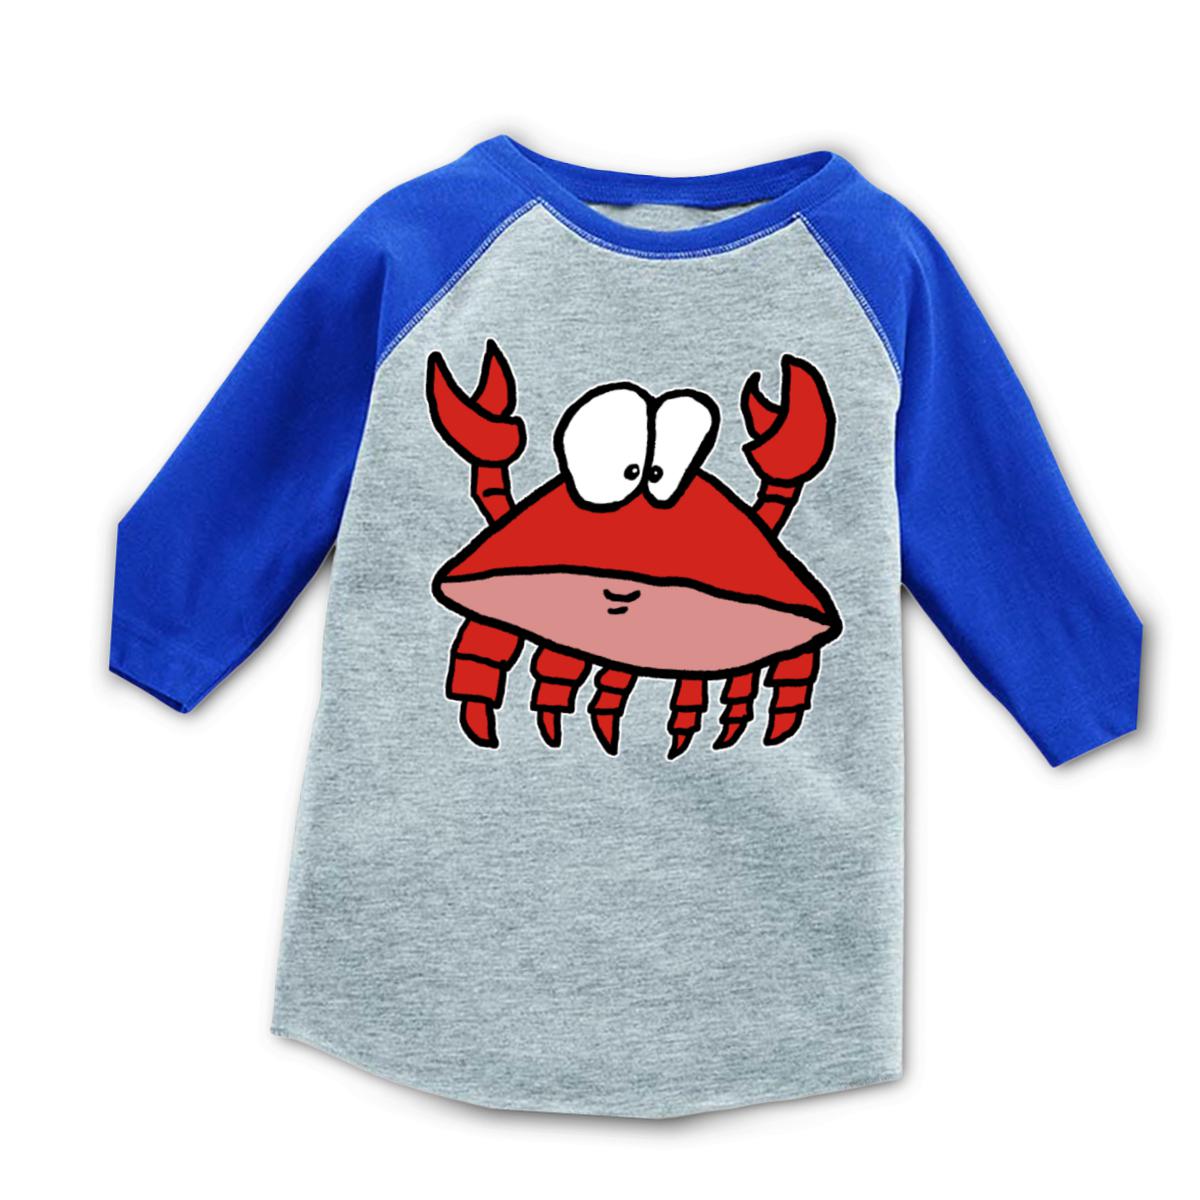 Crab 2.0 Toddler Raglan Tee 56T heather-royal